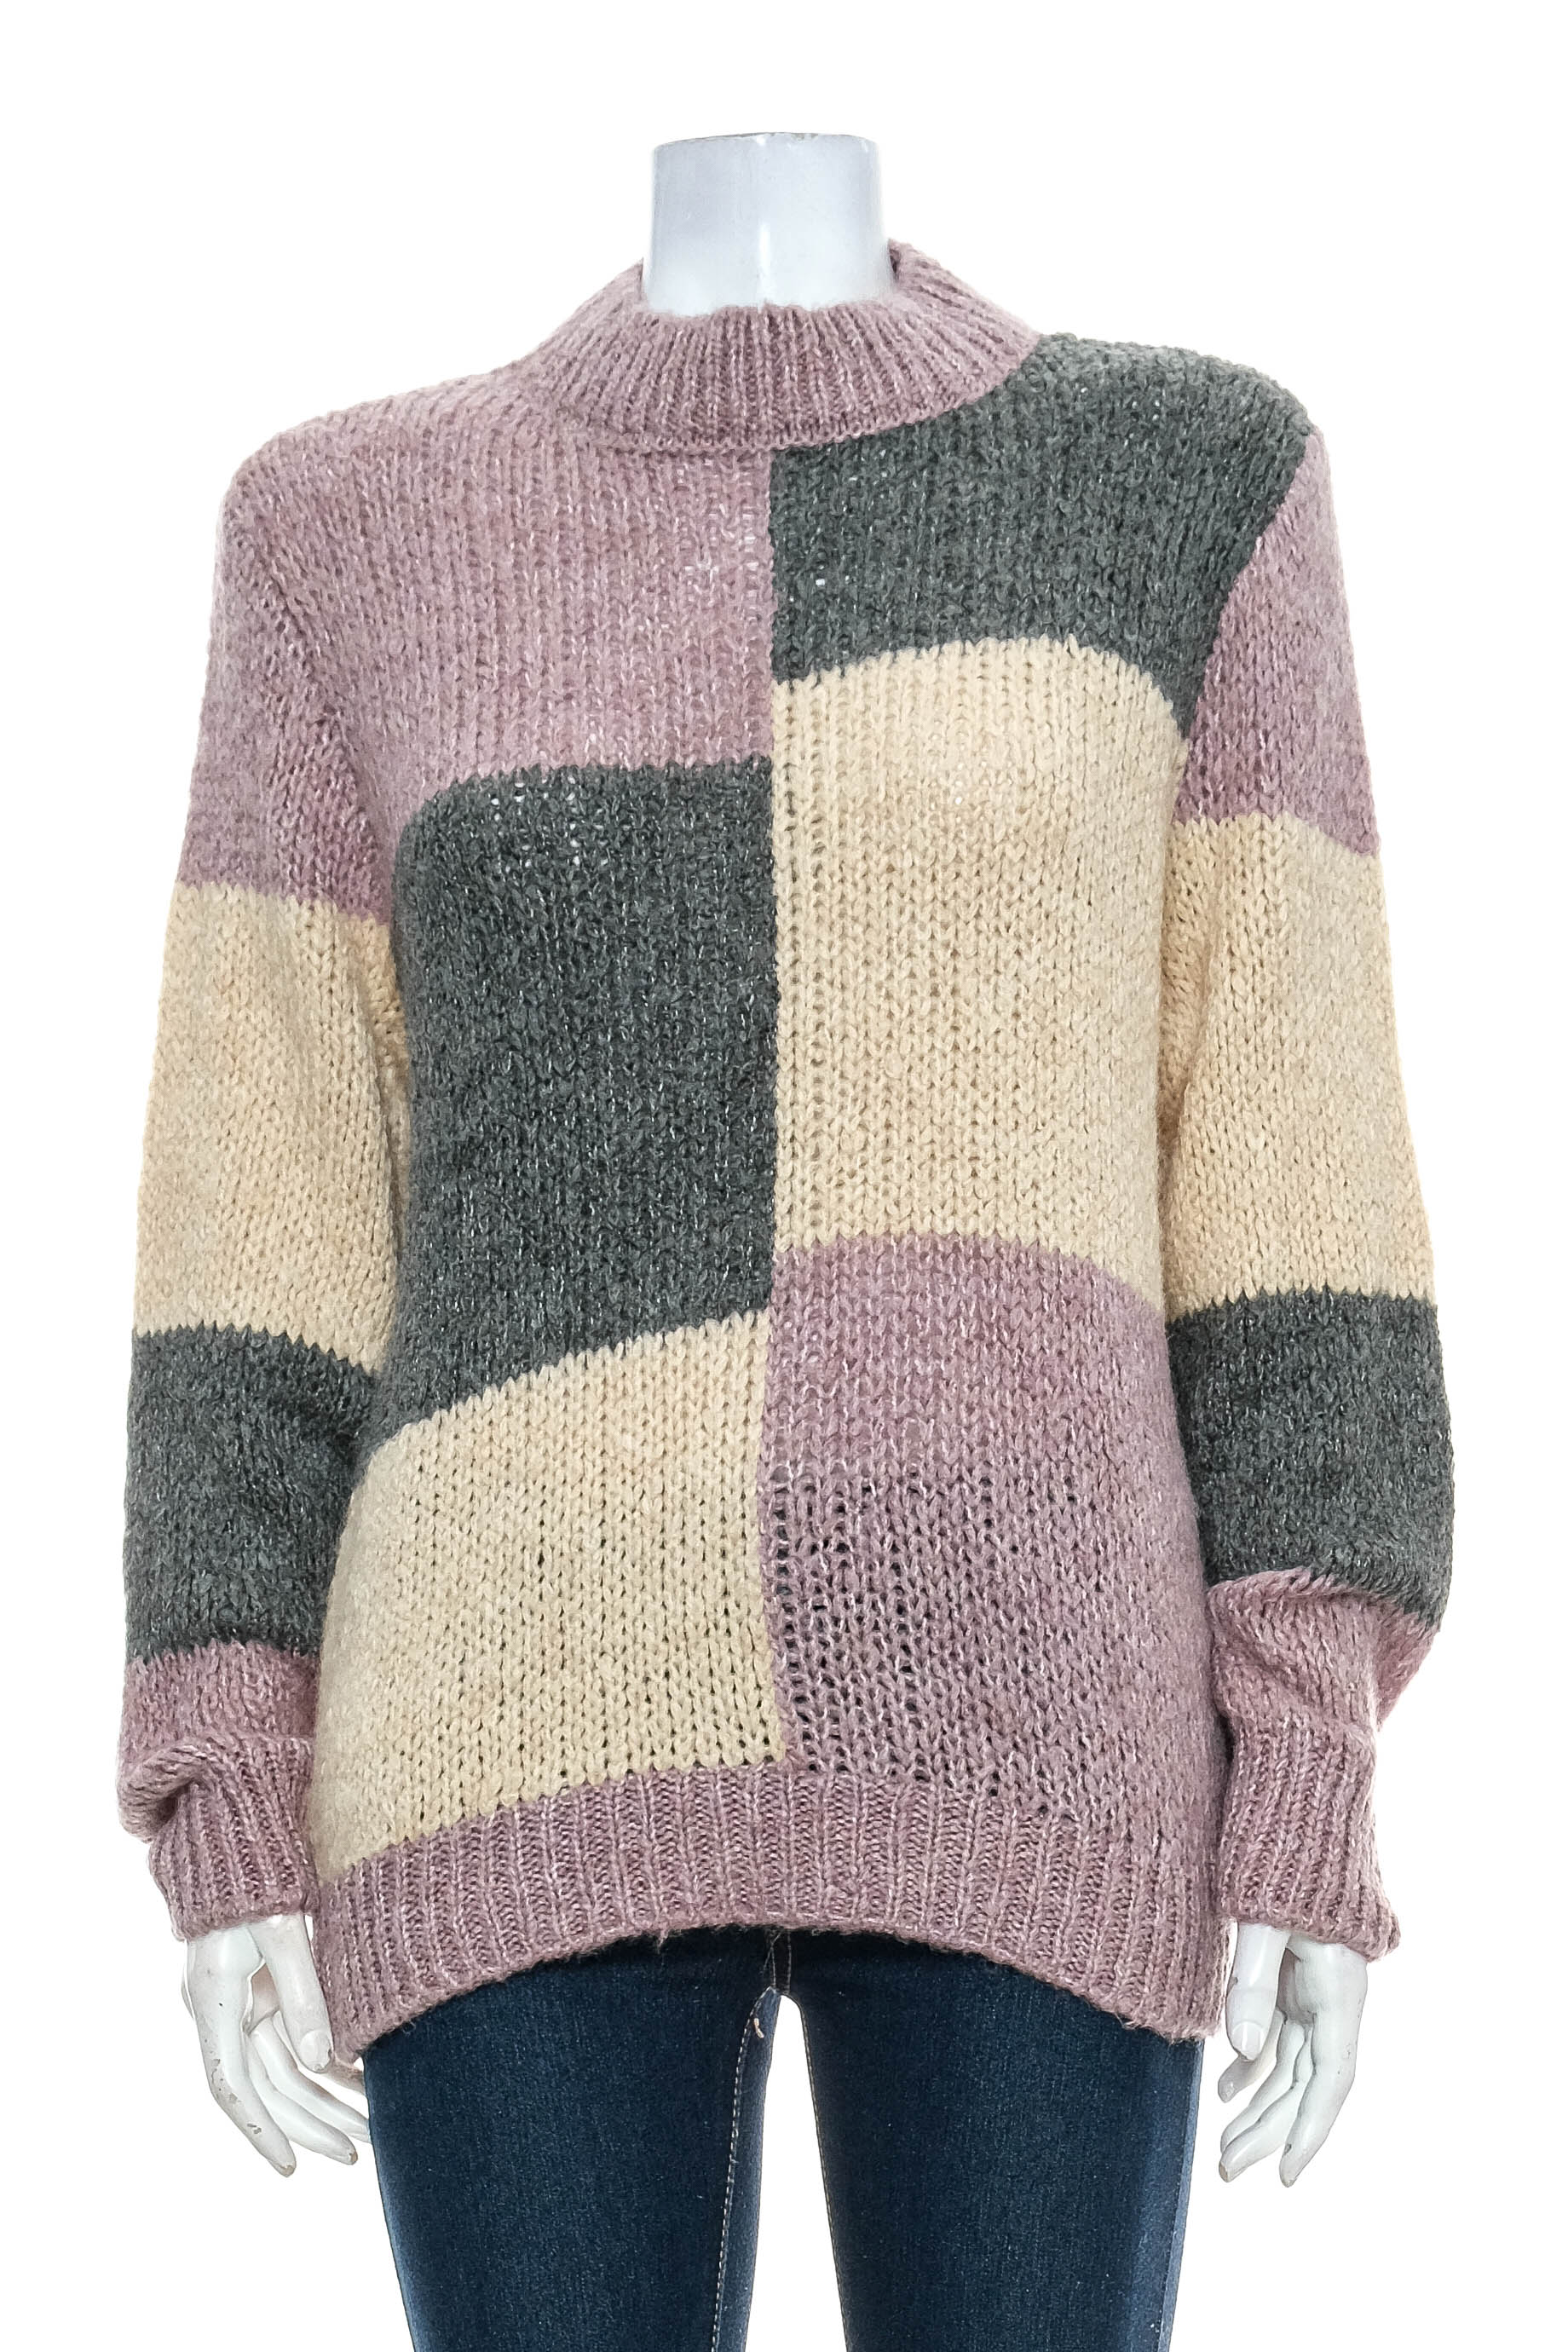 Women's sweater - JDY - 0